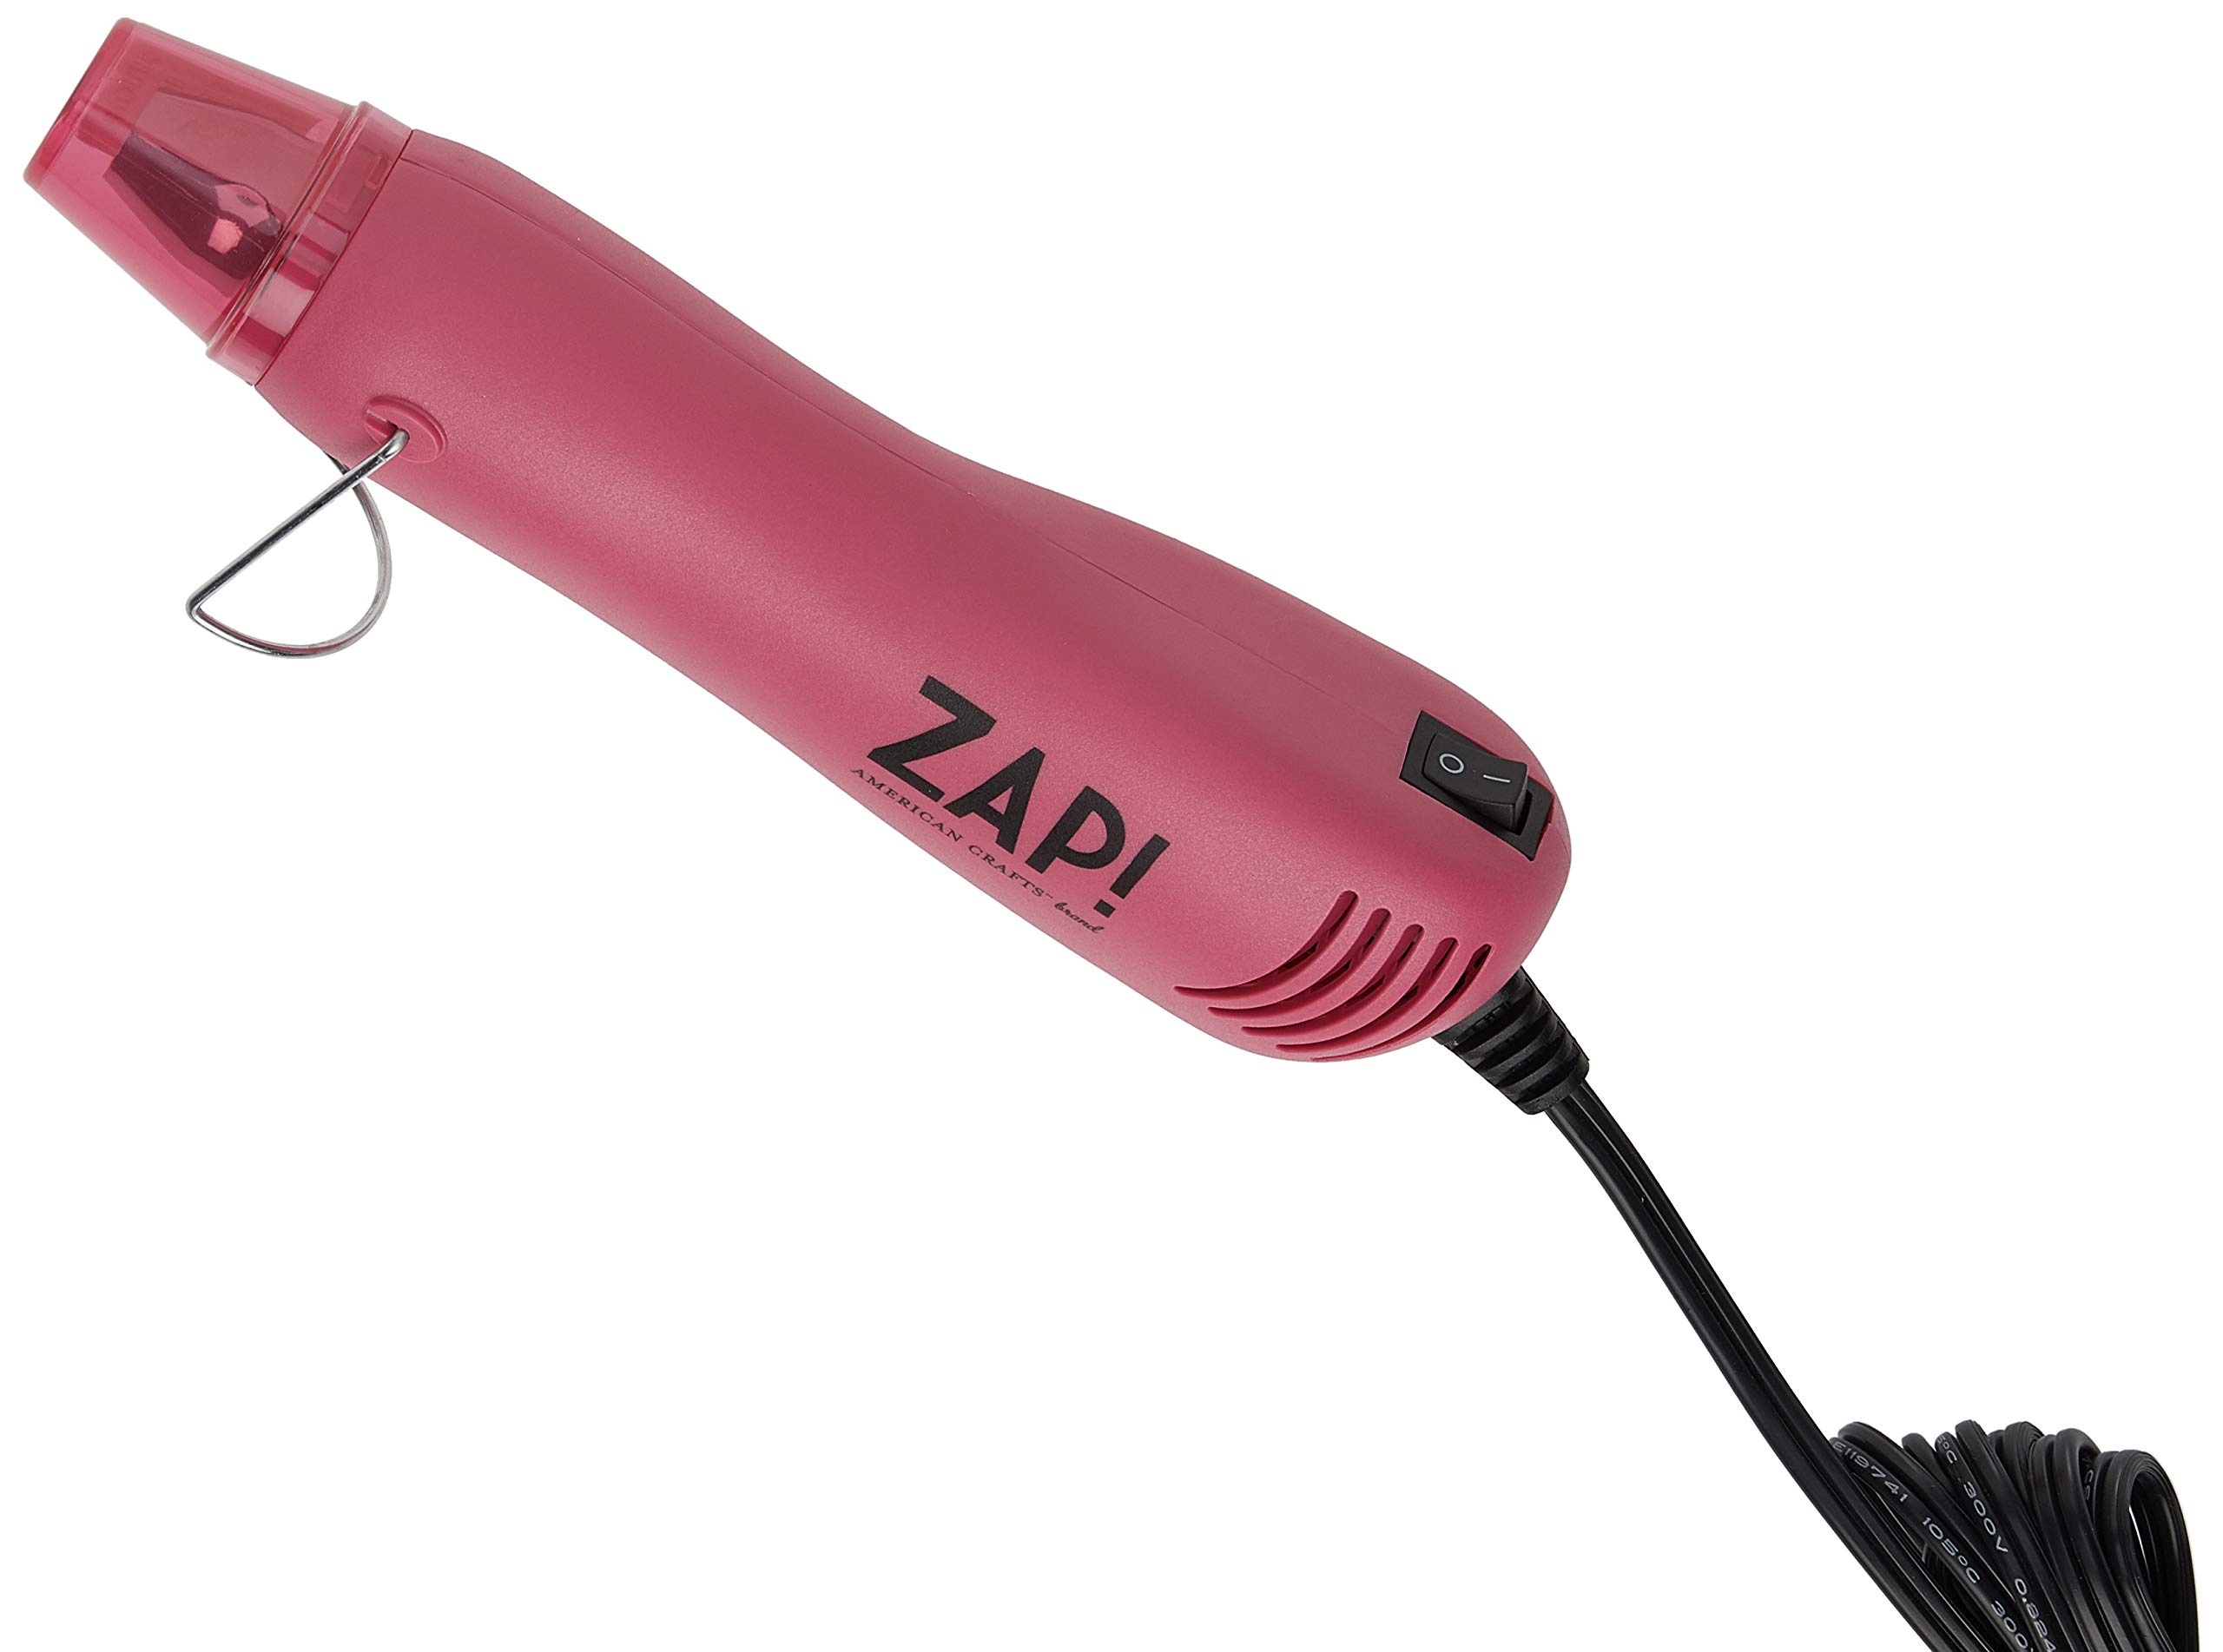 American Crafts Zap Heat Gun Pink, Arts Crafts Crafting Embrossing Tool  Embossing Heat Gun Heat Gun for Crafting Zap Heat Gun for Resin Resin Heat  Gun